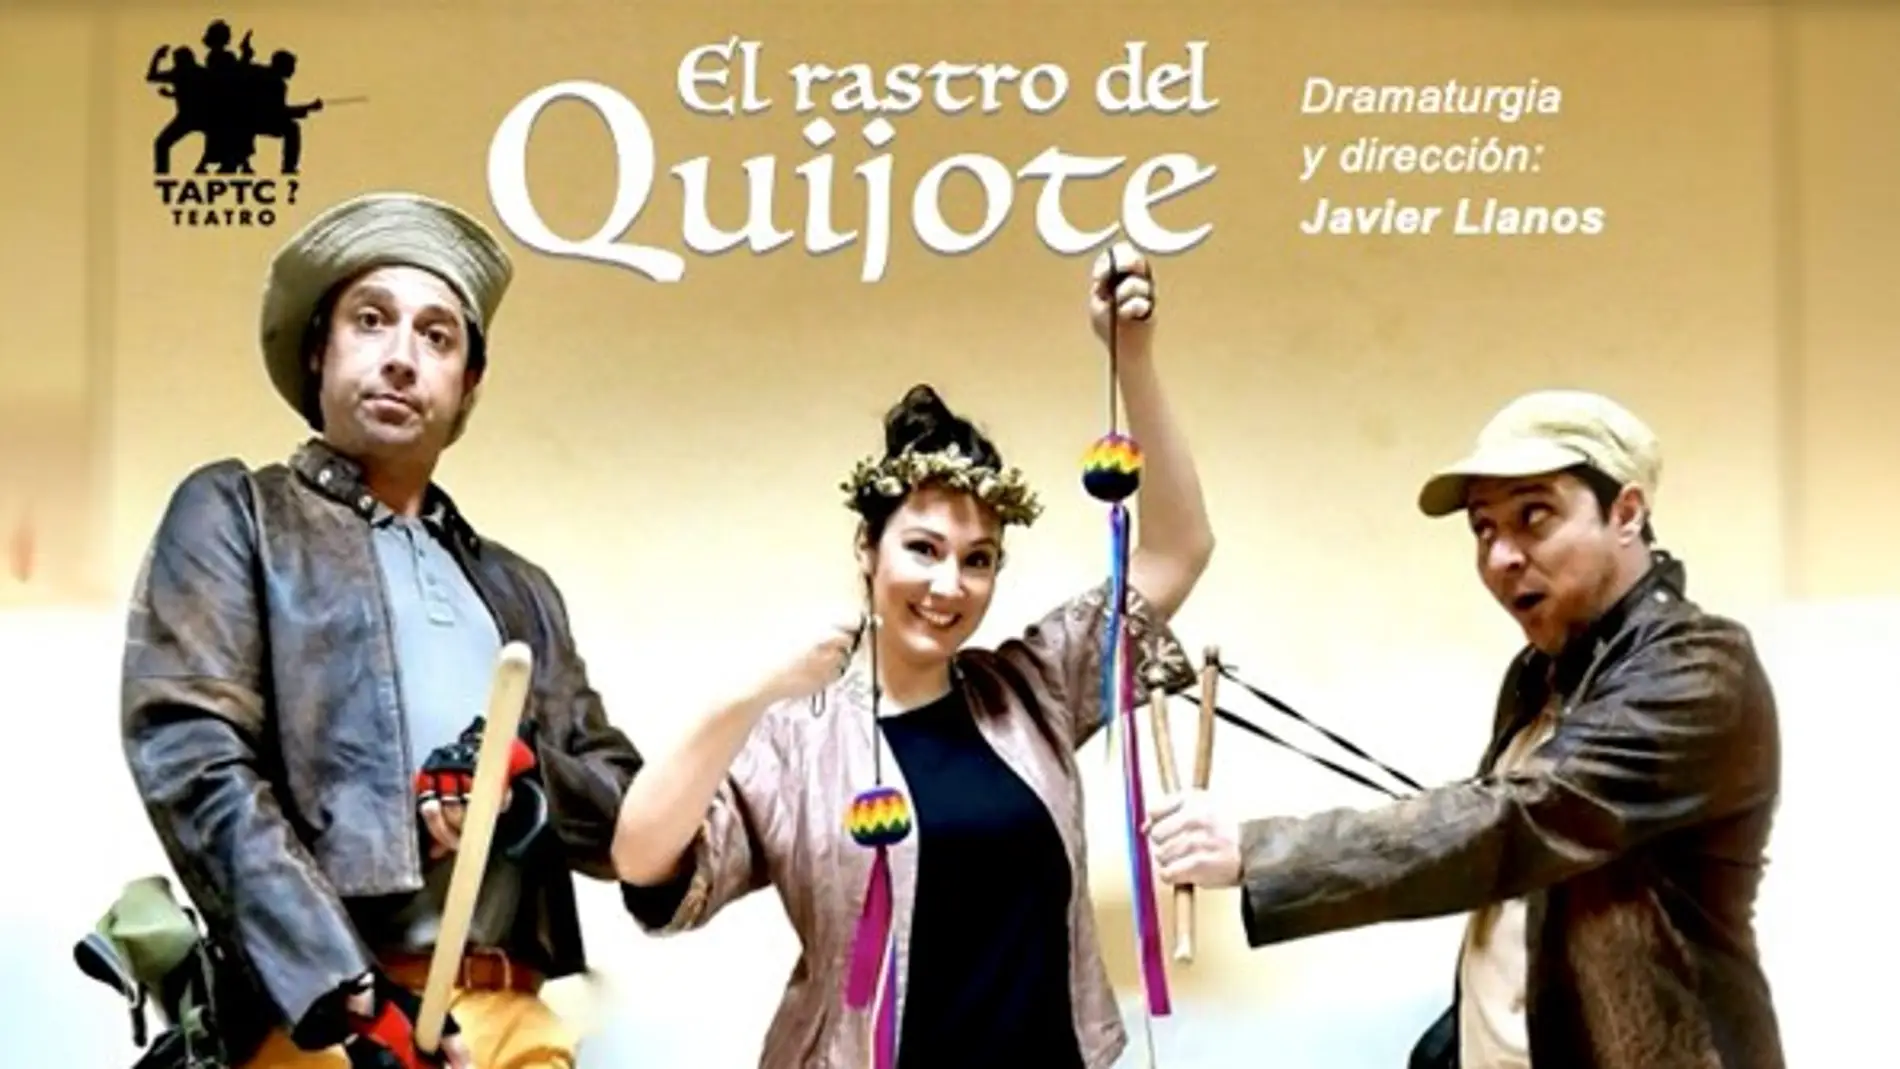 Cartel del espectáculo teatral “El rastro del Quijote”